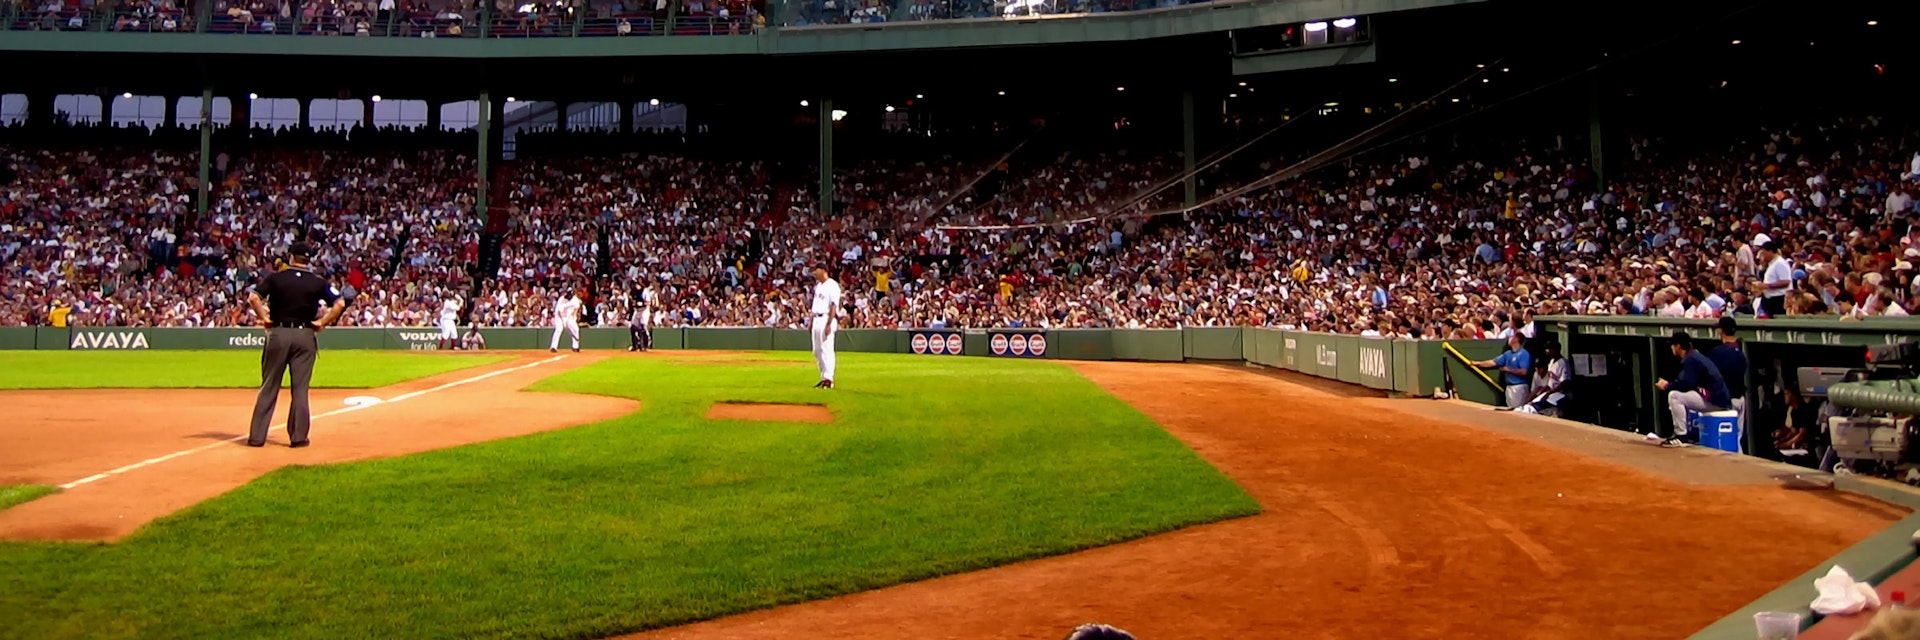 Baseball game in Fenway Park, Boston, Massachusetts.